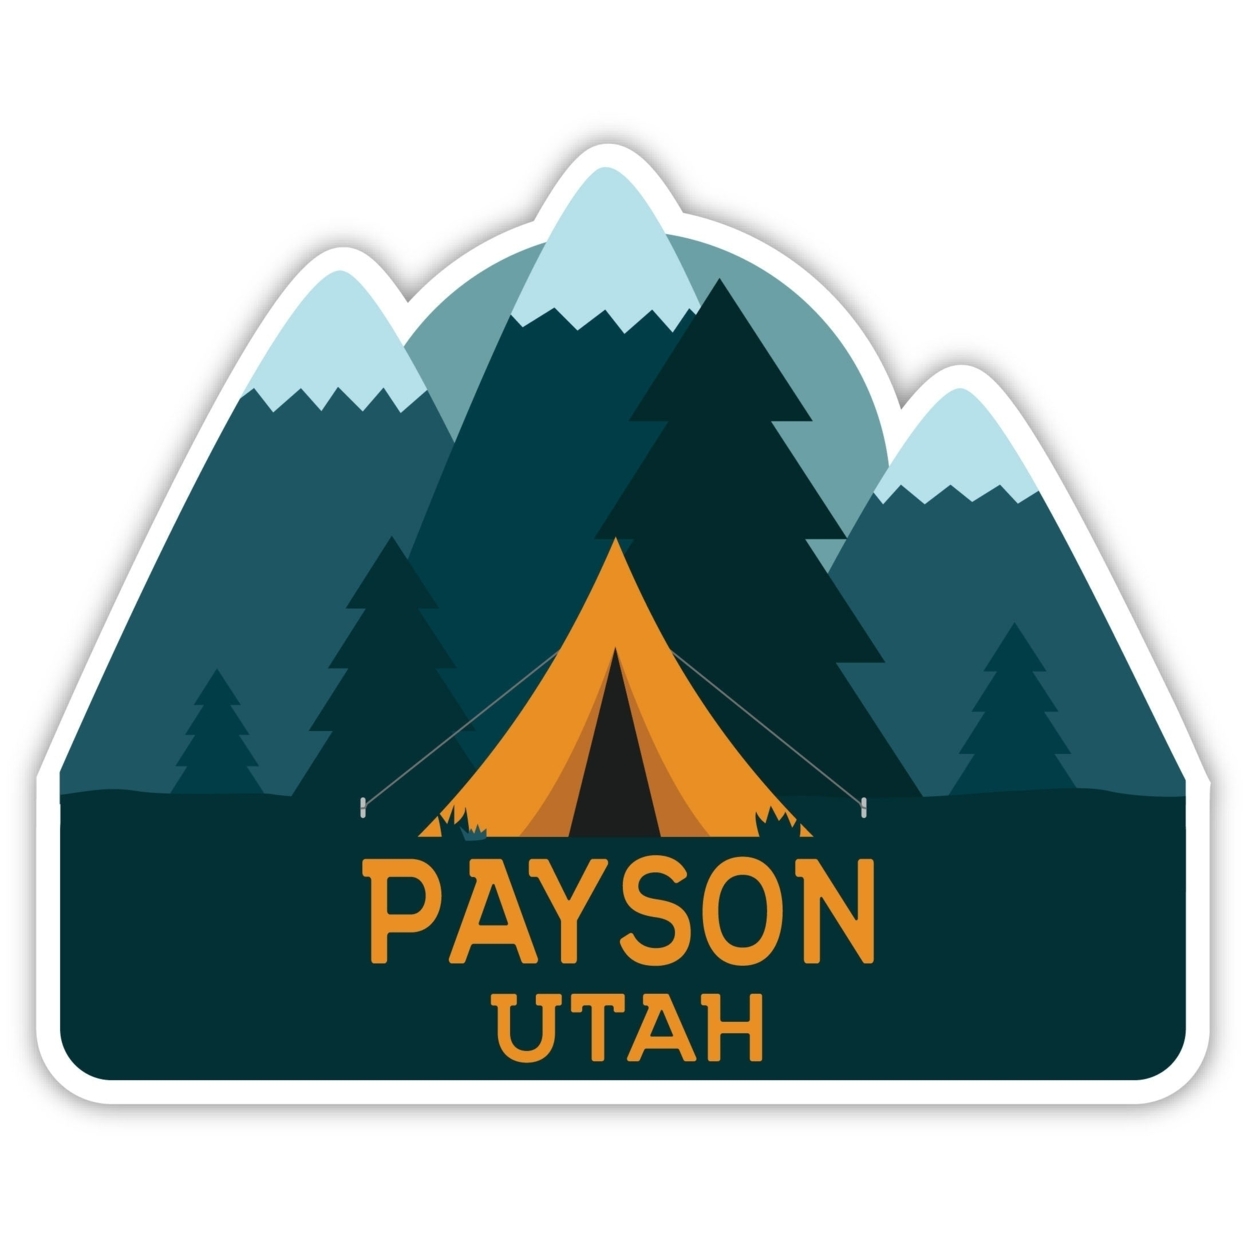 Payson Utah Souvenir Decorative Stickers (Choose Theme And Size) - Single Unit, 4-Inch, Tent